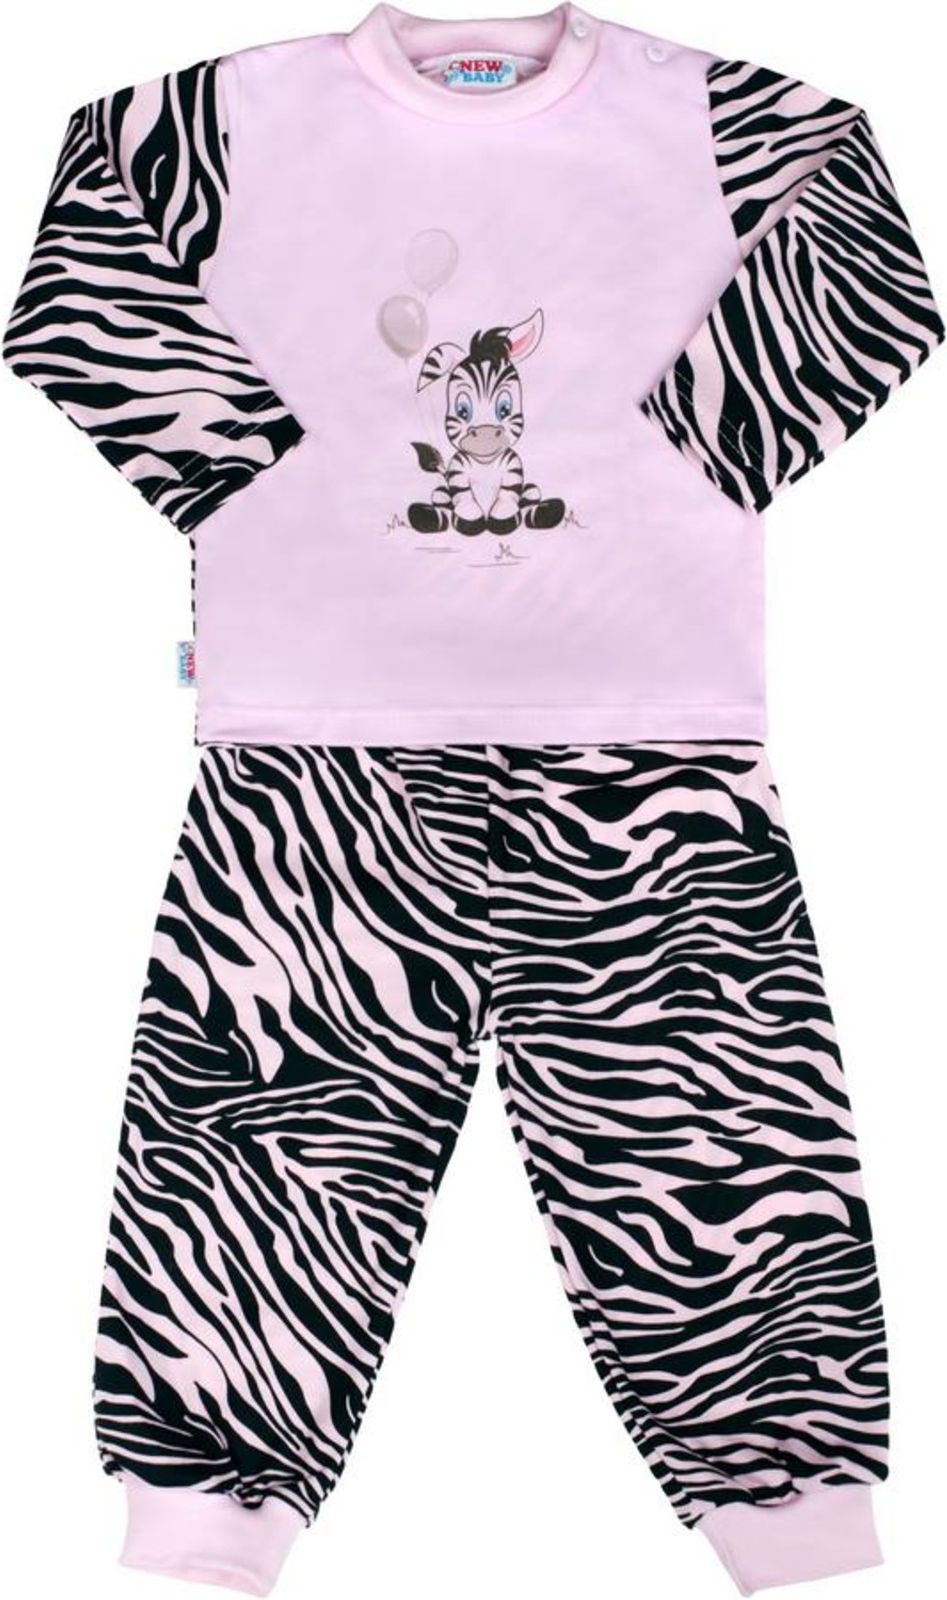 Dětské bavlněné pyžamo New Baby Zebra s balónkem růžové - Dětské bavlněné pyžamo New Baby Zebra s balónkem růžové - obrázek 1